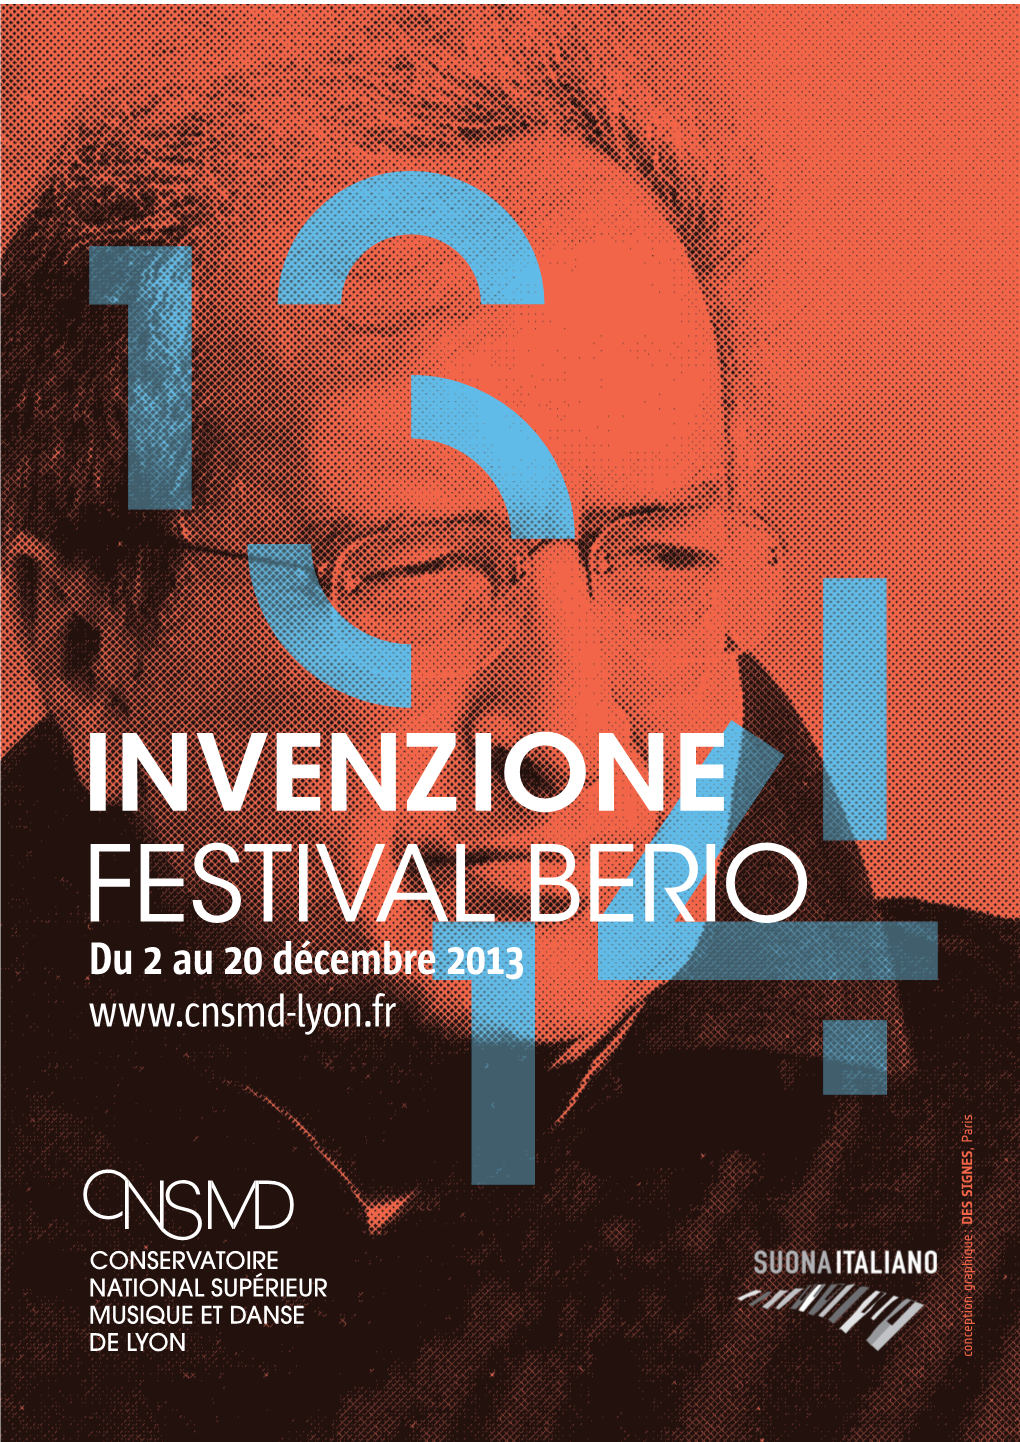 Invenzione Festival Berio